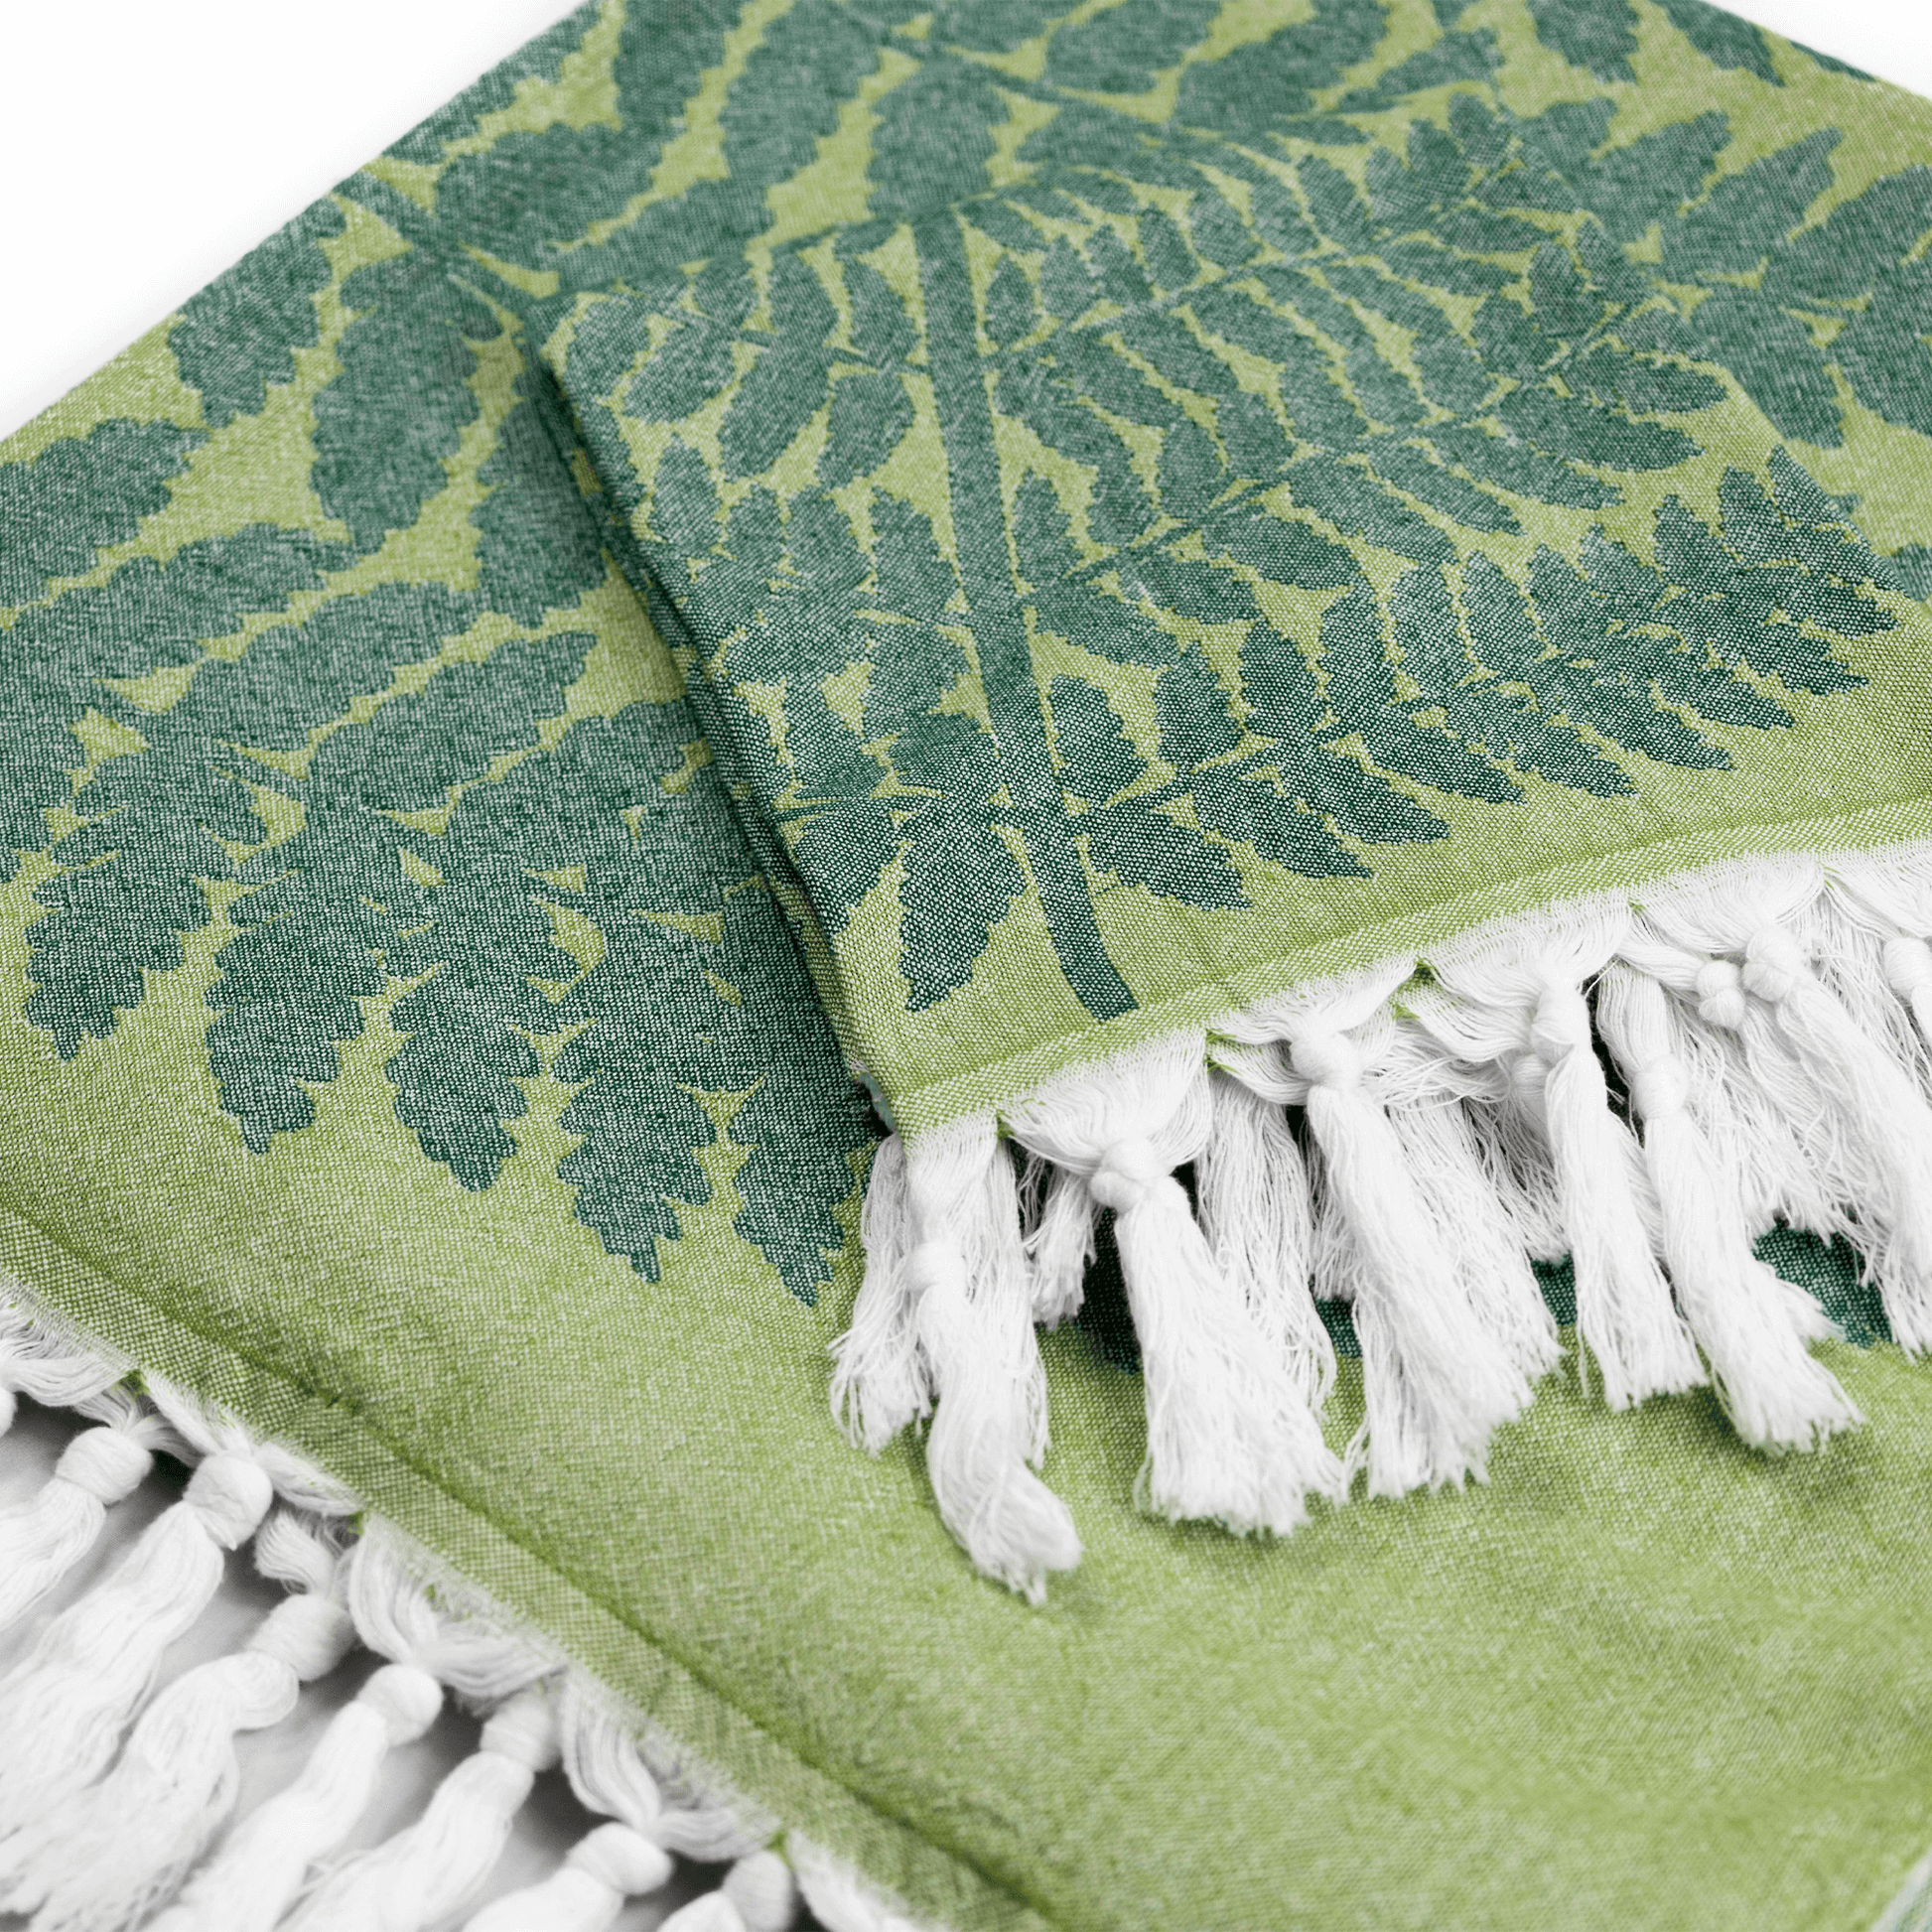 Turkish Cotton Towel Set / Fern in Green